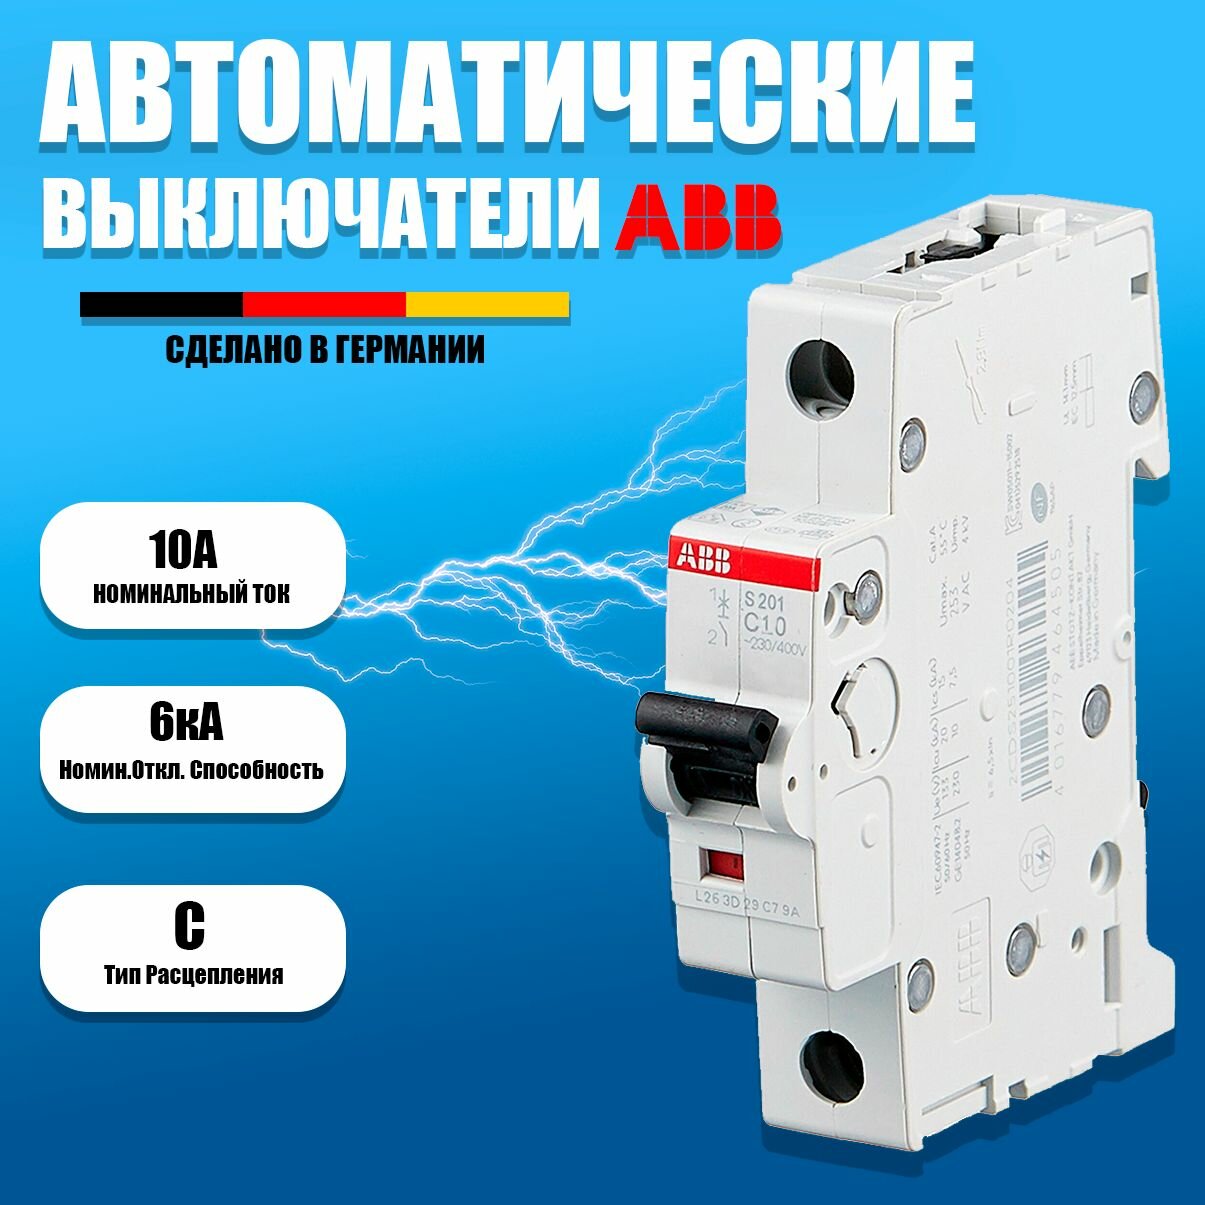 ABB Автоматический выключатель S201 С10 A